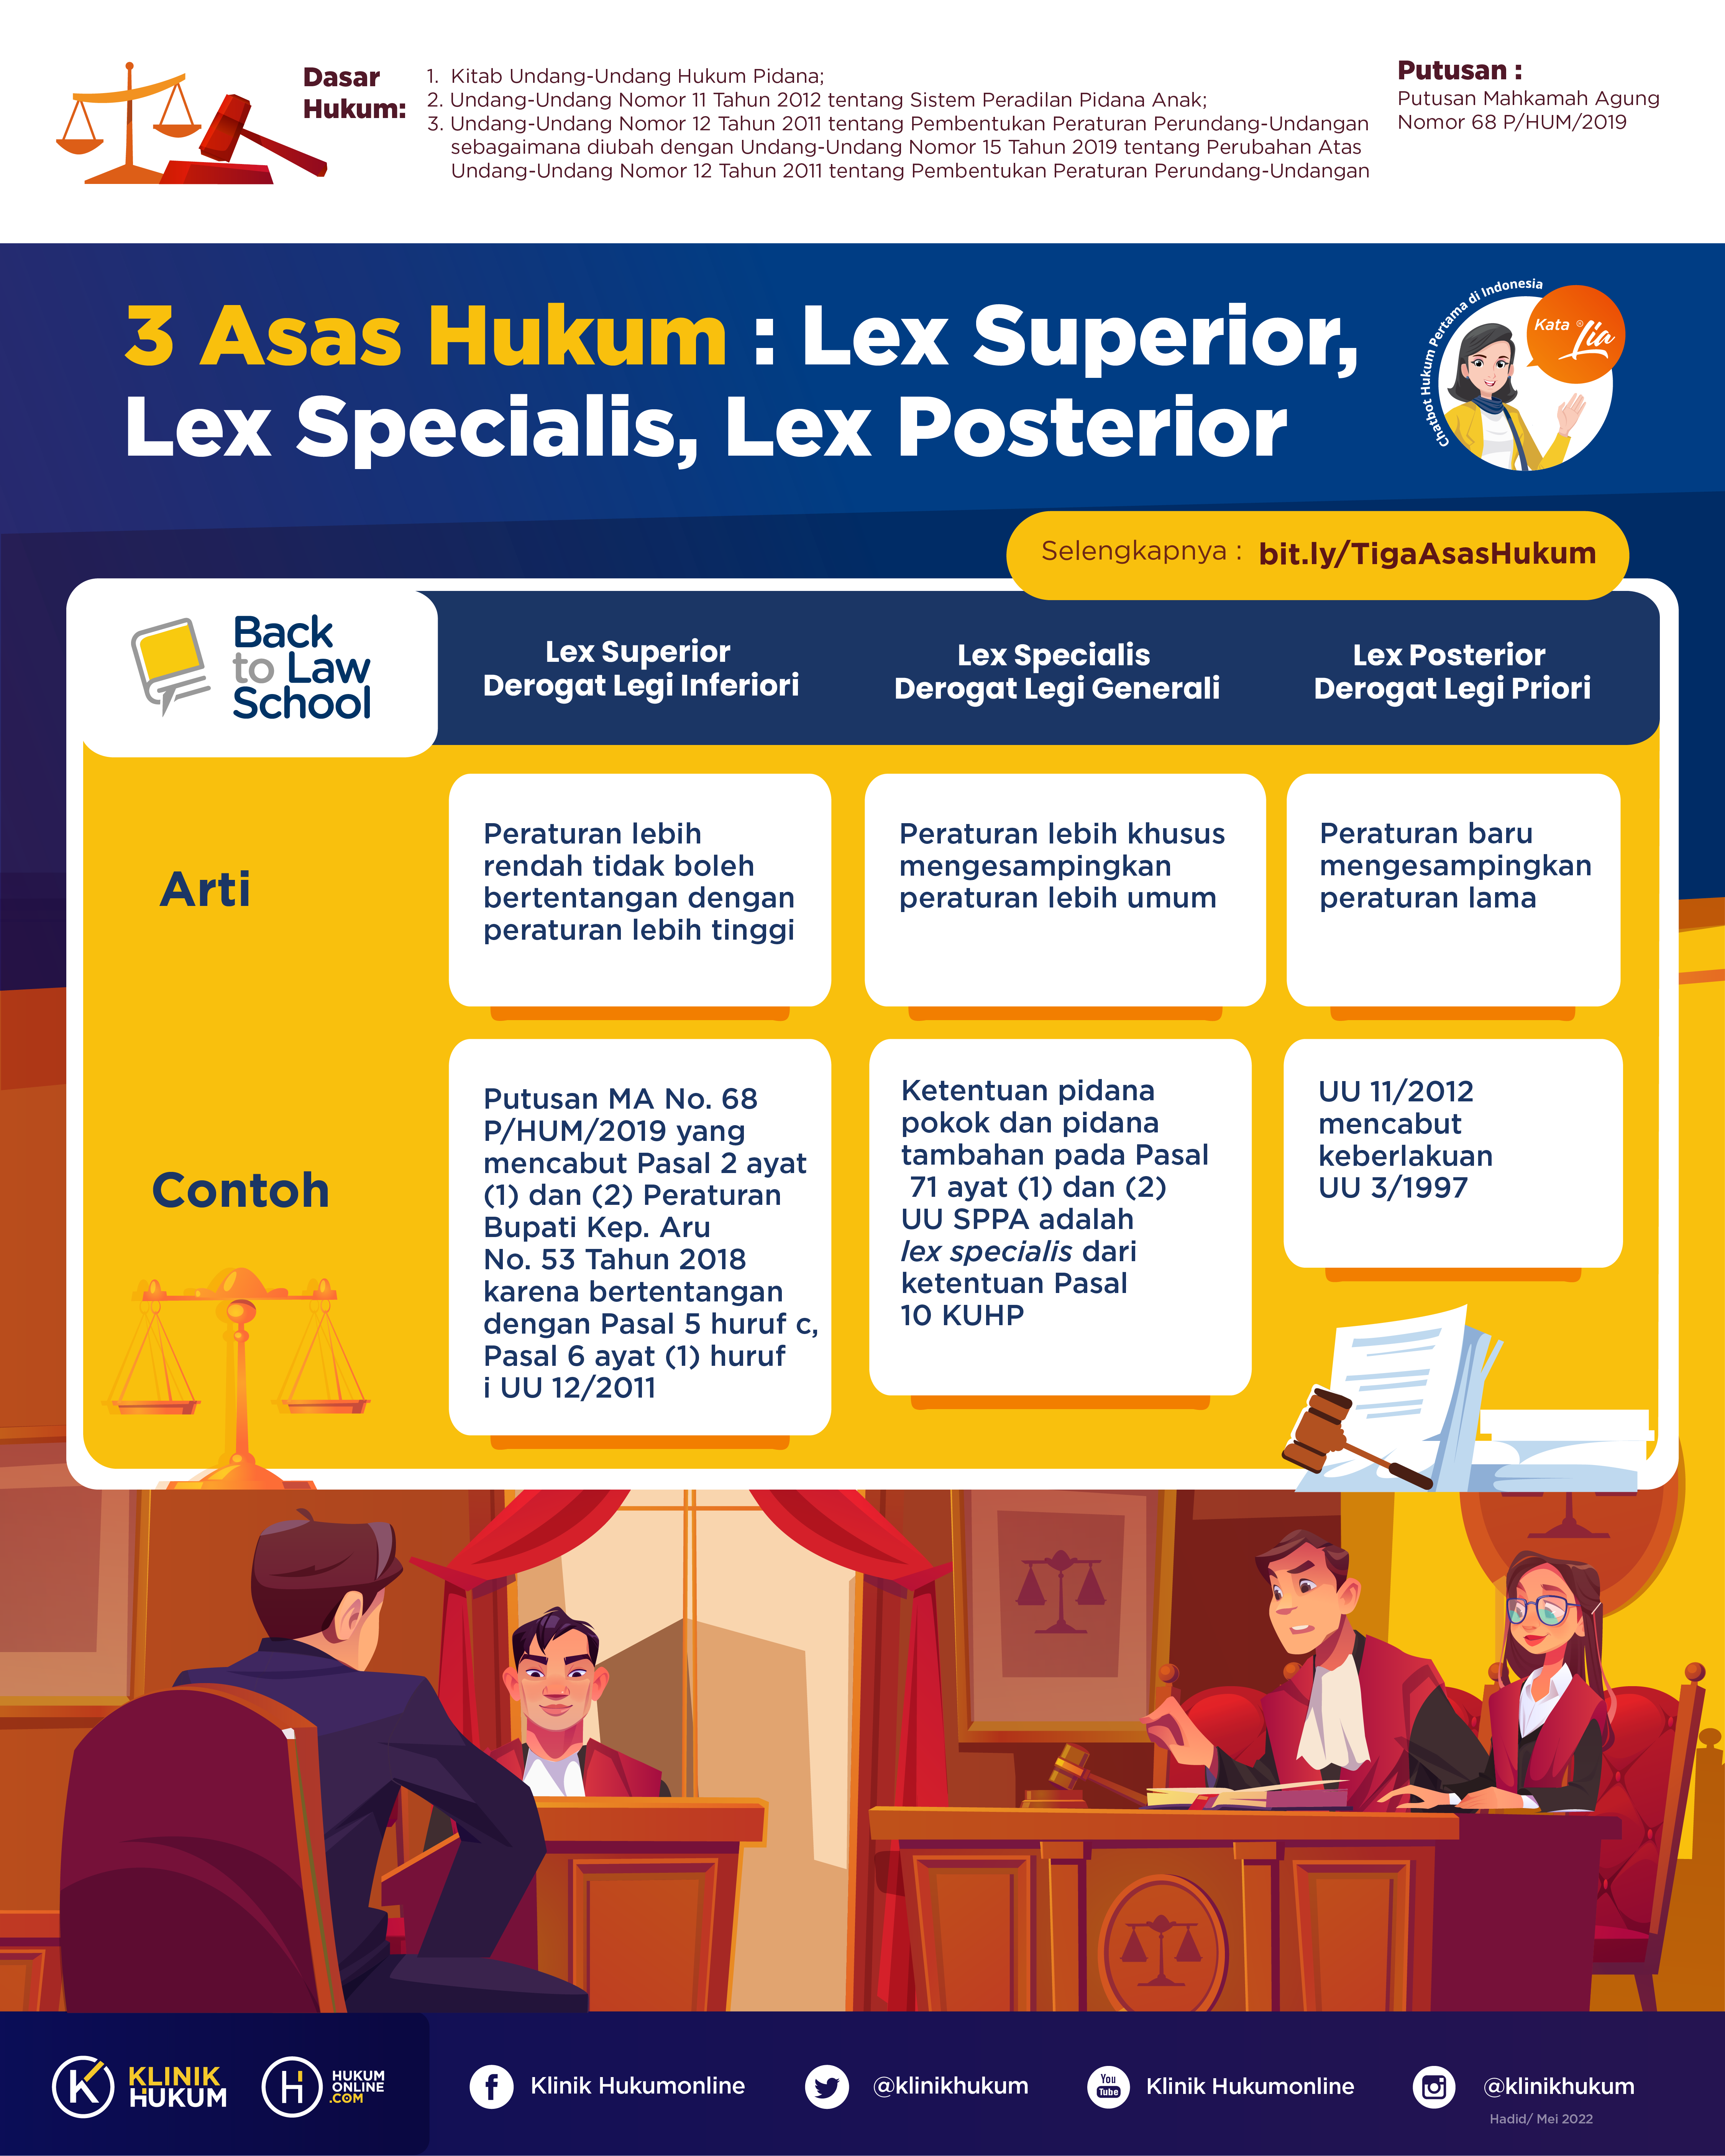 Tiga Asas Hukum: Lex Superior, Lex Specialis, Lex Posterior